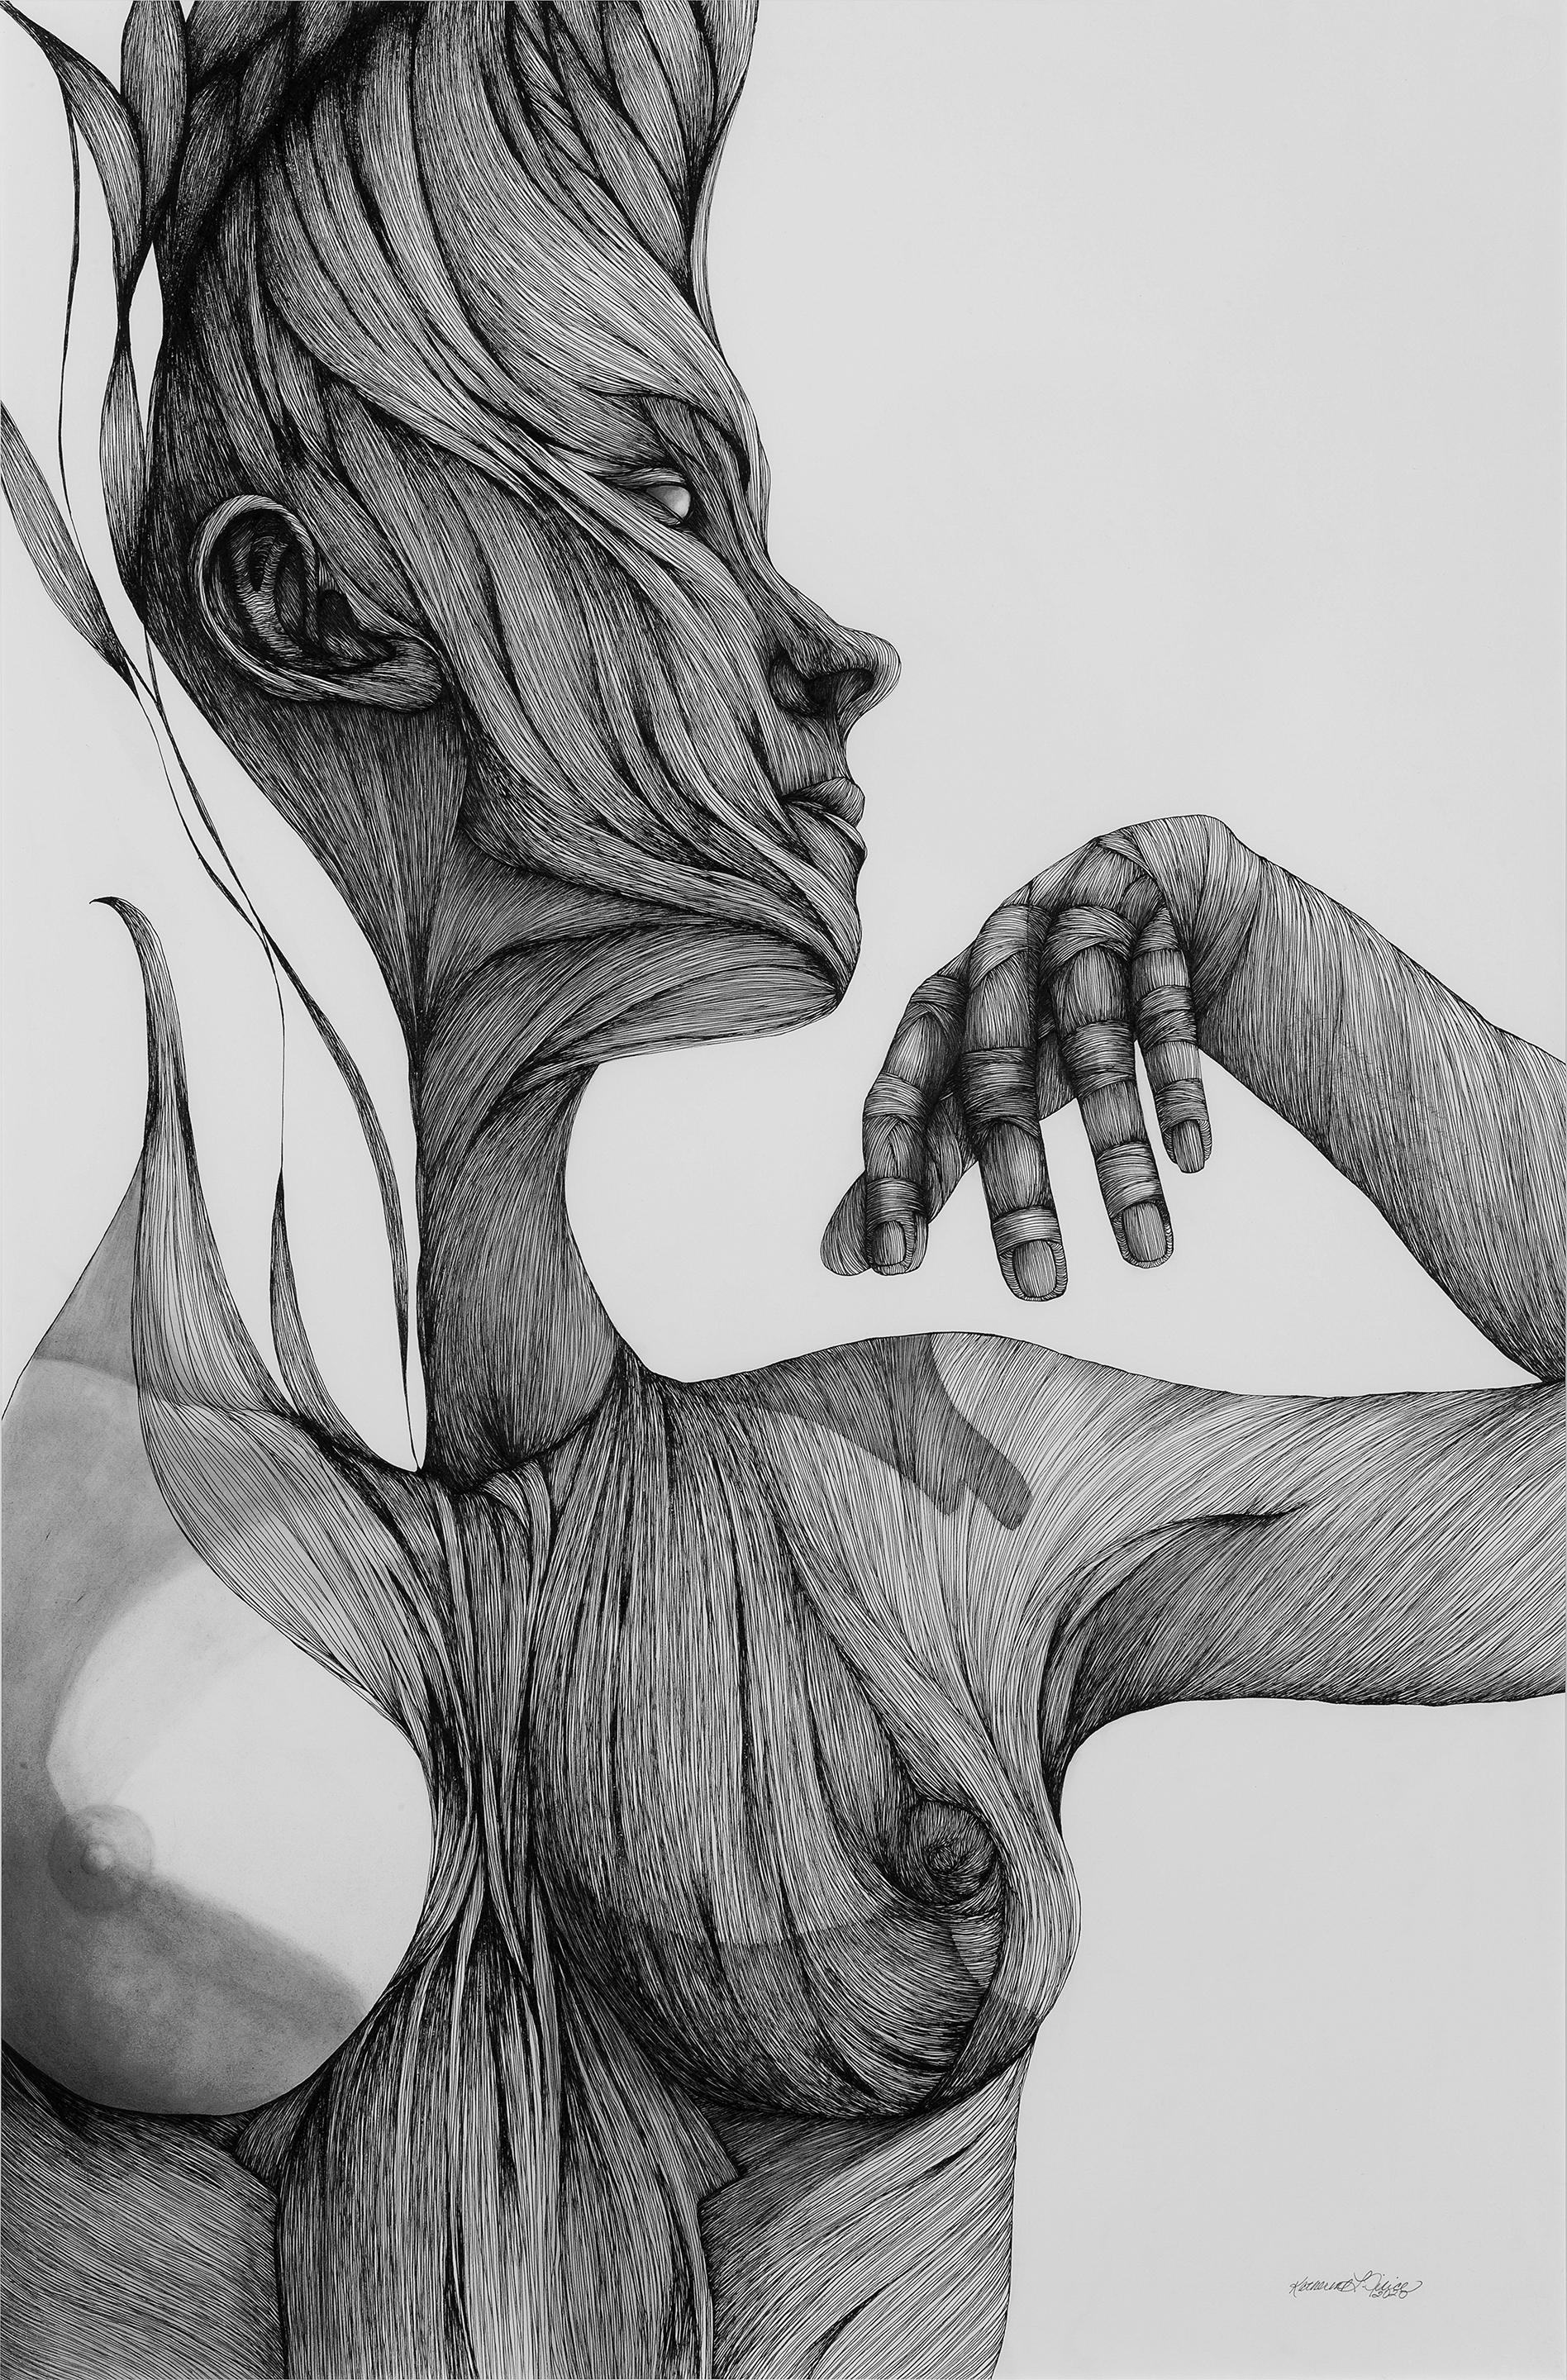 Ether - Stift, Tinte, Schwarz-Weiß-Zeichnung einer weiblichen Figur – Art von Katherine Filice